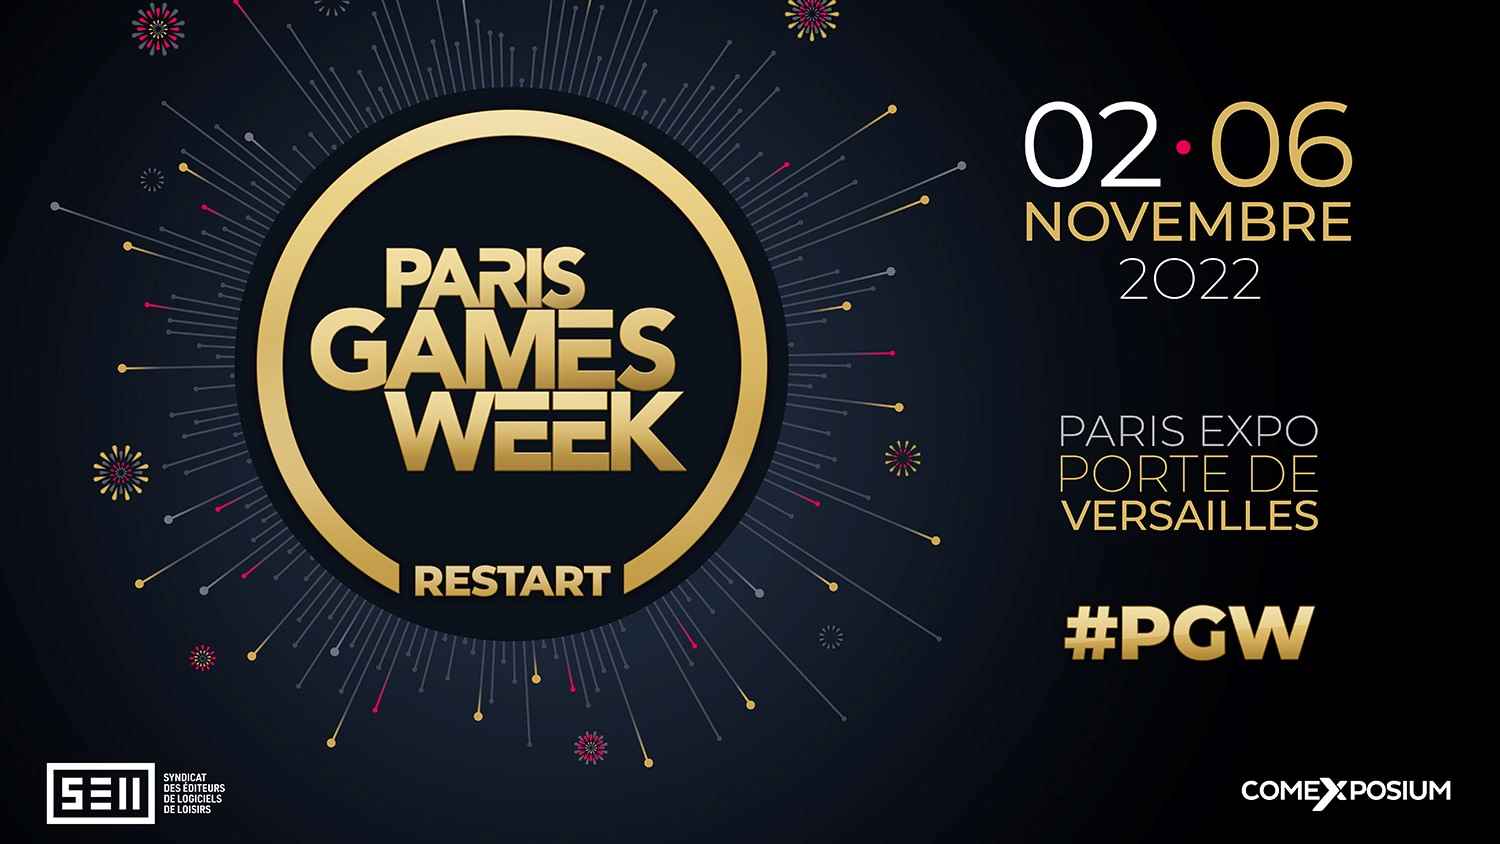 La Paris Games Week revient en novembre après trois ans d'absence.